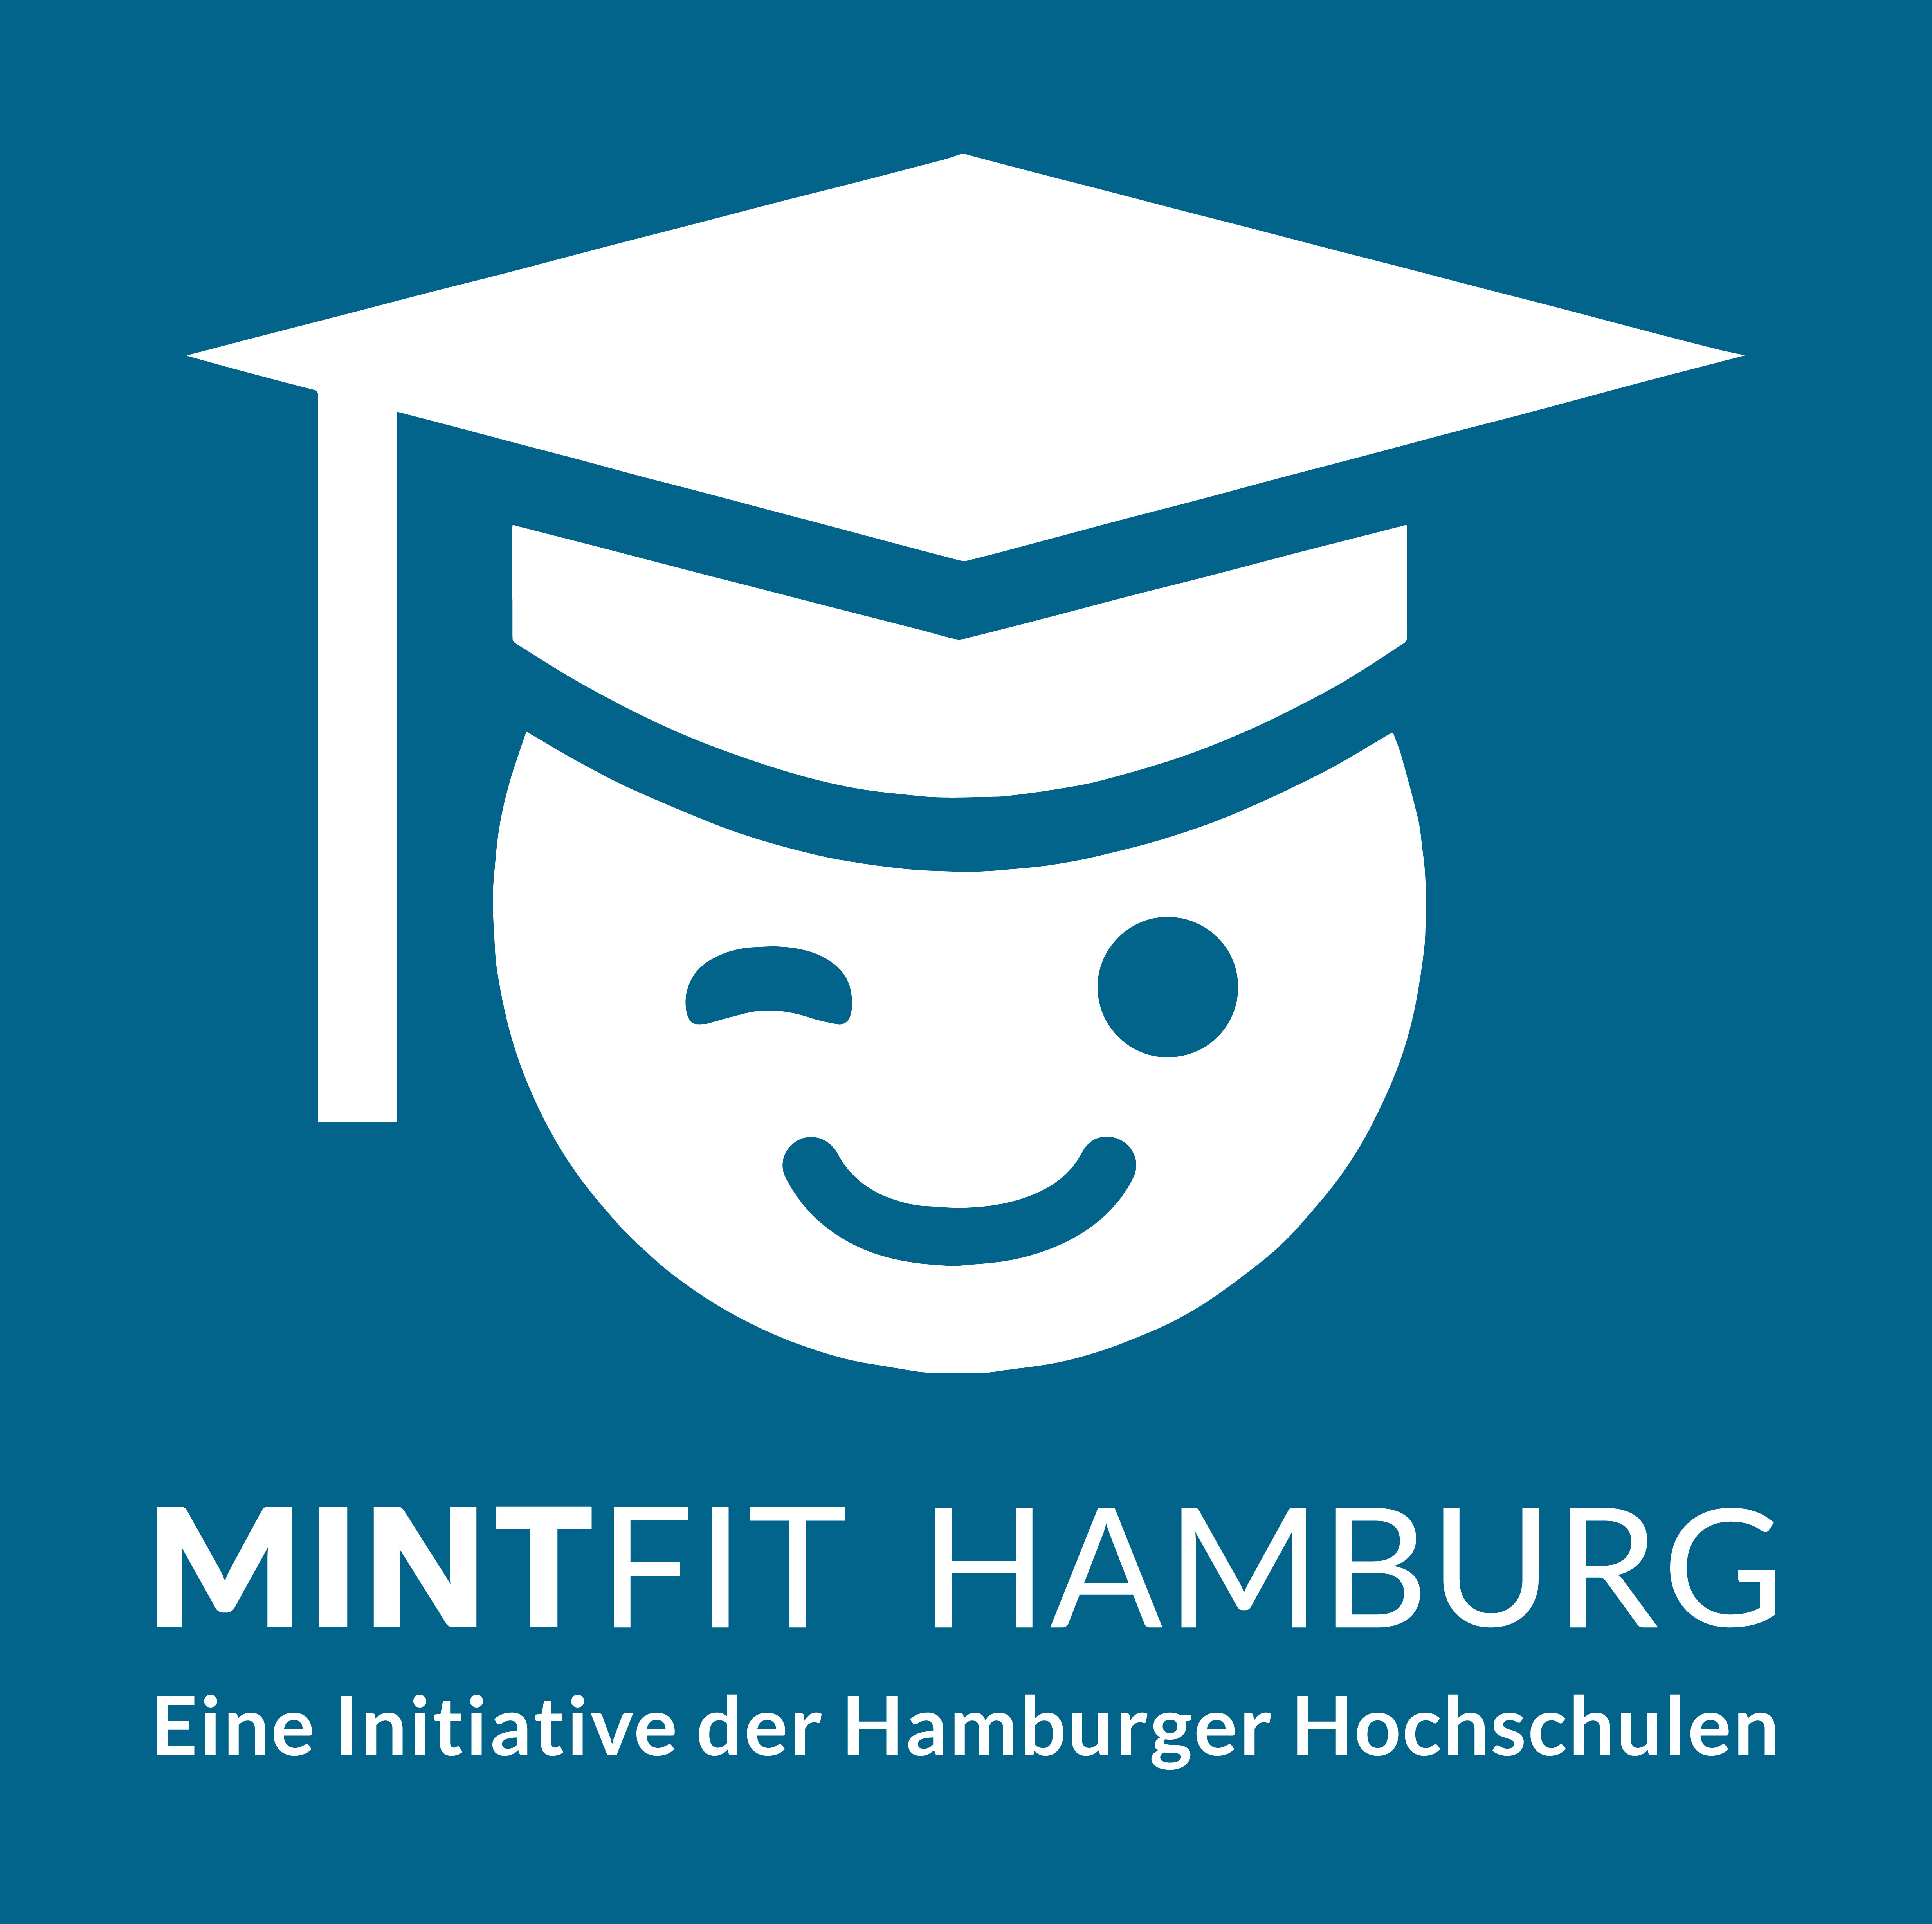 Das ist das Logo von MINTFIT Hamburg.